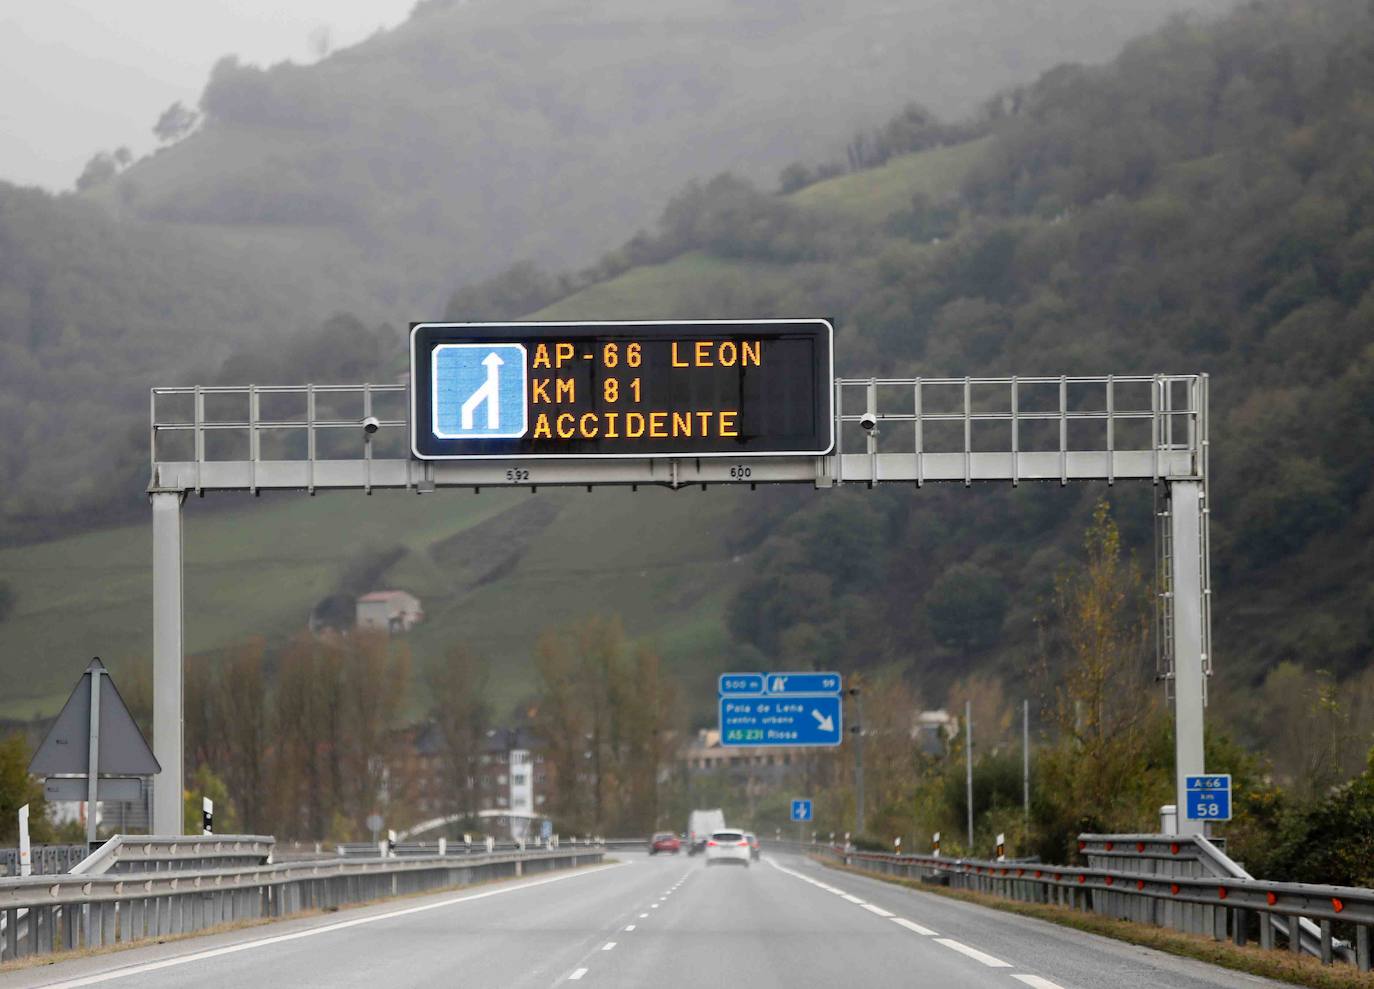 Tras el accidente mortal, la circulación en sentido Asturias, según informó, Aucalsa, quedaba restablecida en torno a las 8 horas, mientras que la calzada en sentido León quedaba totalmente expedita a las nueve menos cinco de la mañana